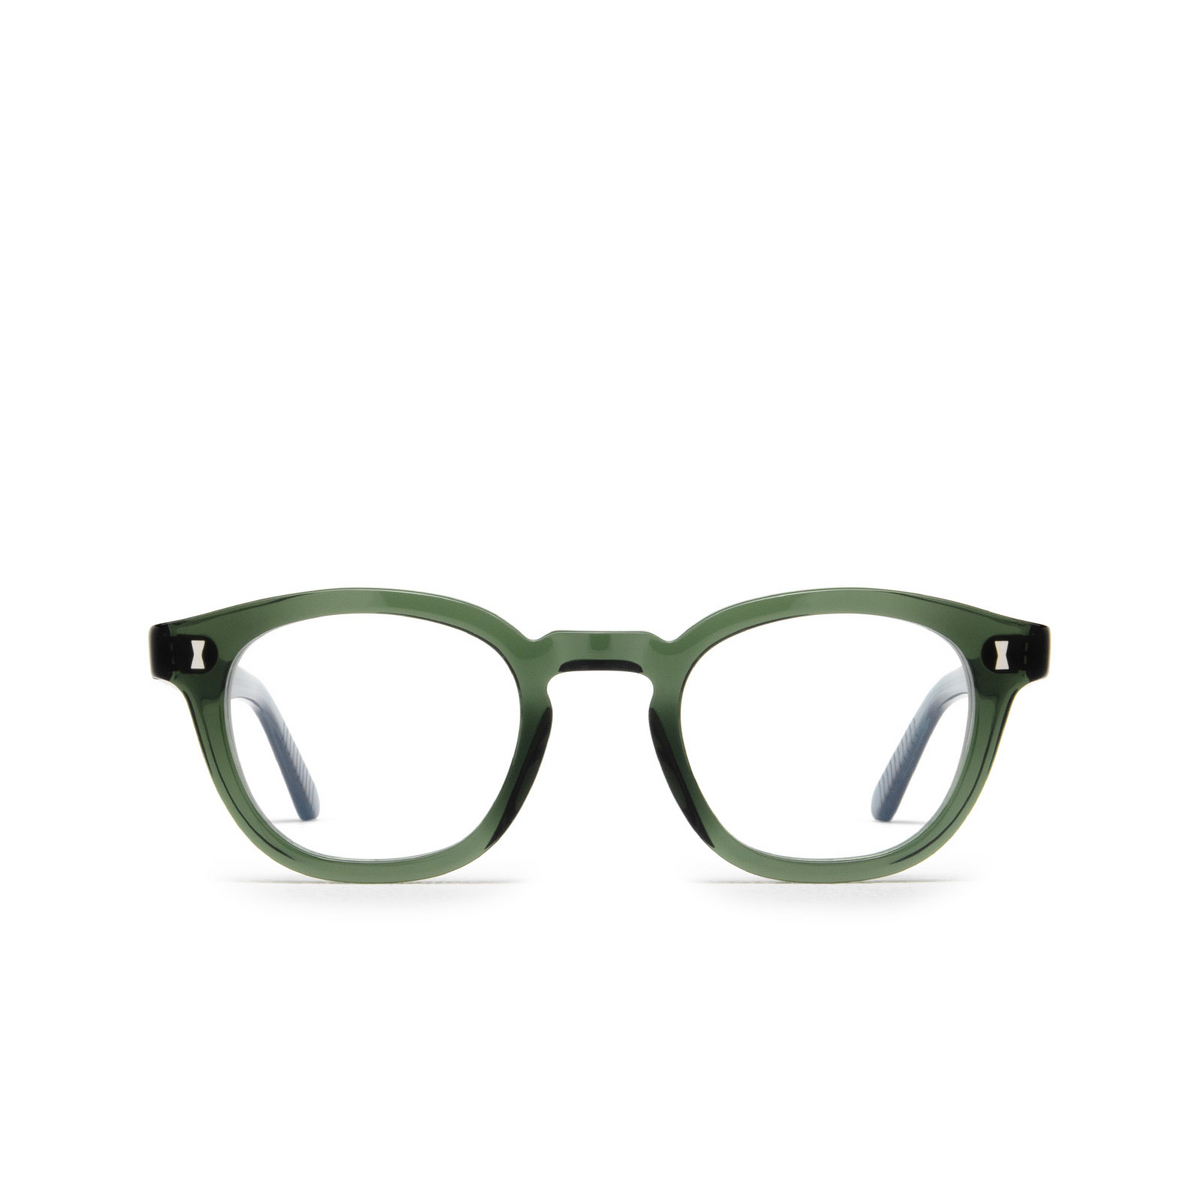 Cubitts MORELAND Eyeglasses MOR-R-CEL Celadon - front view